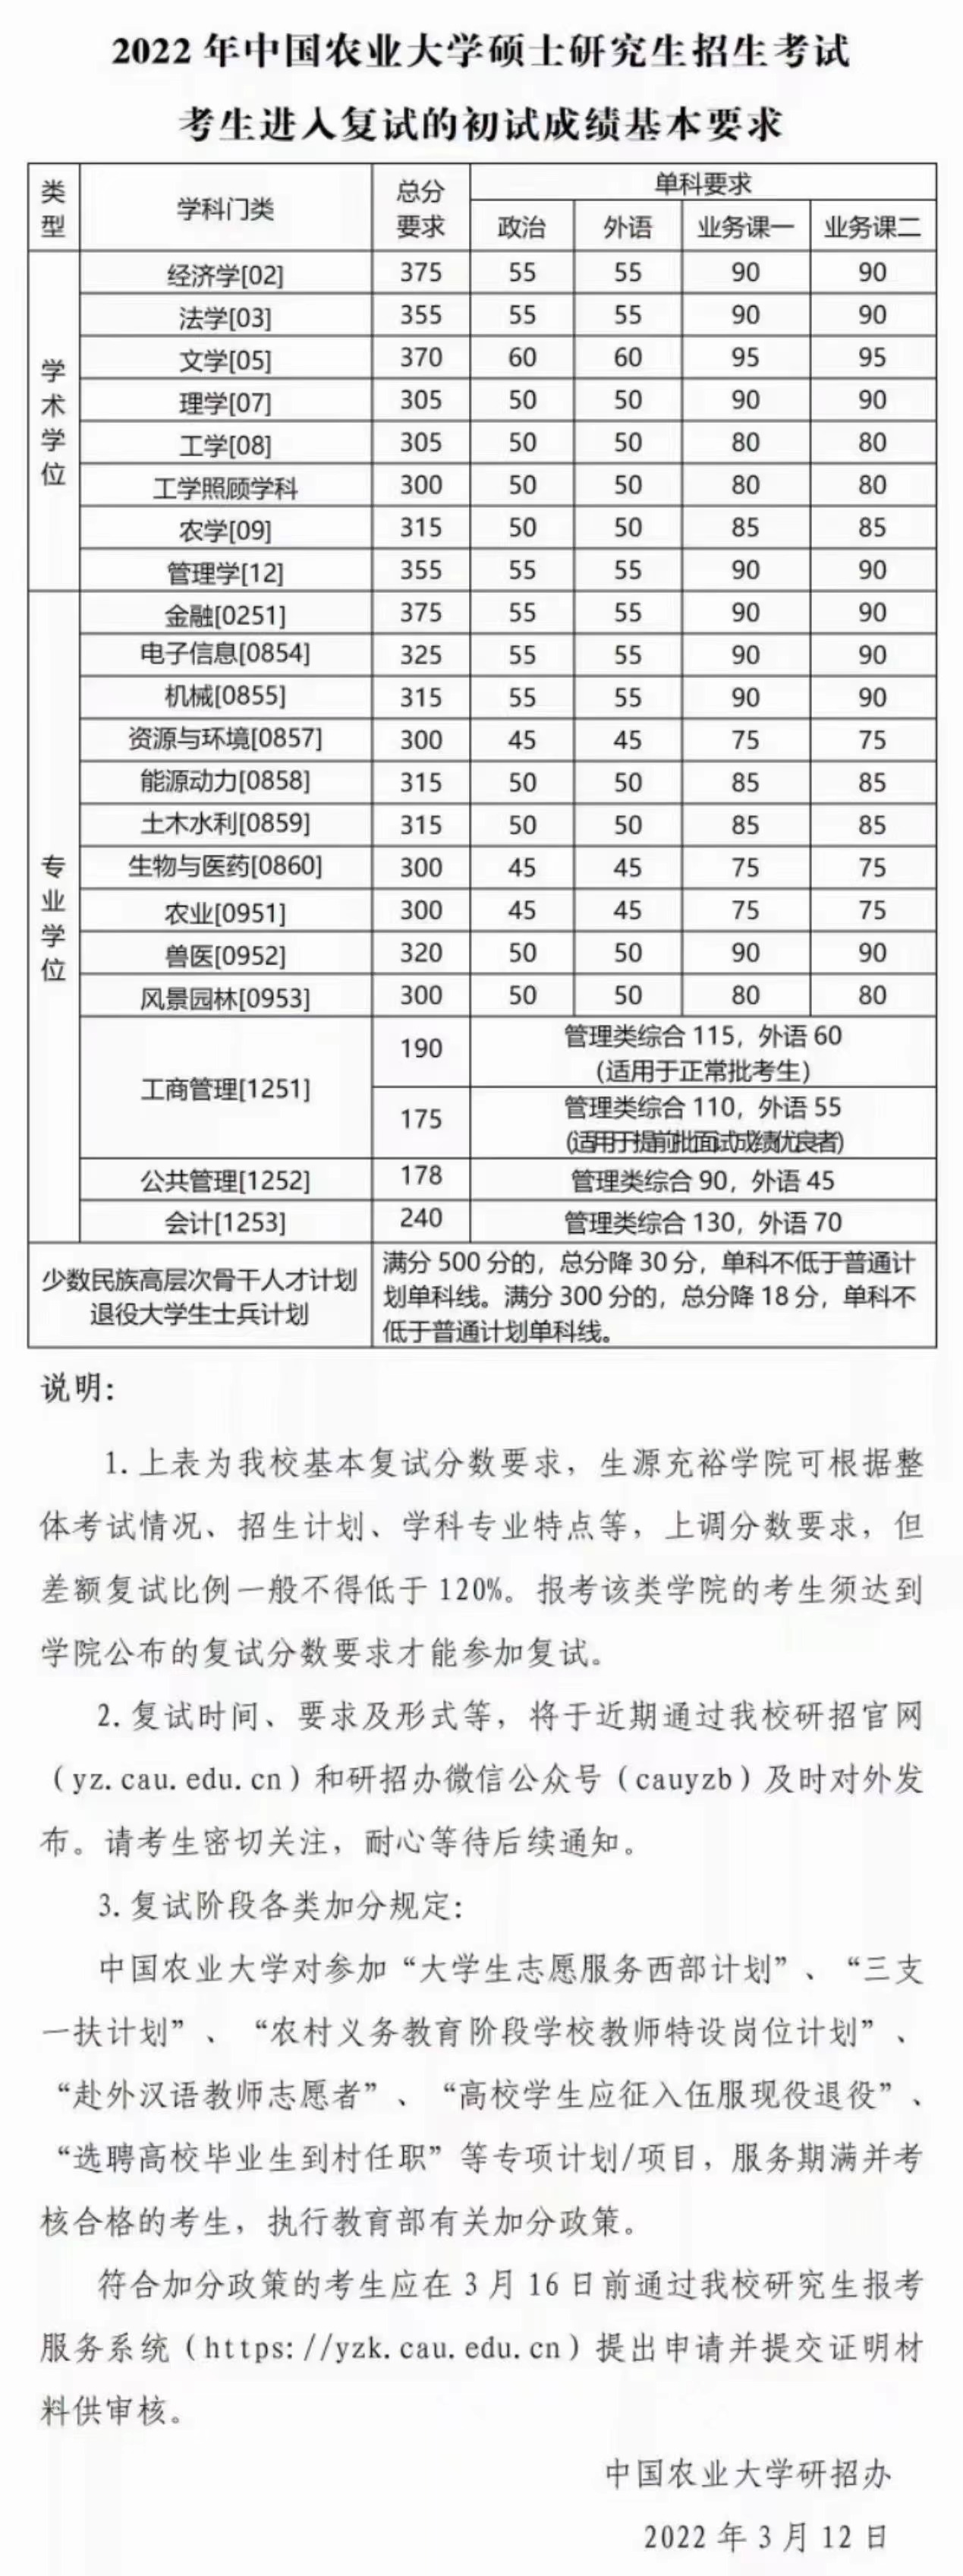 中国农业大学2022年研究生复试分数线公布